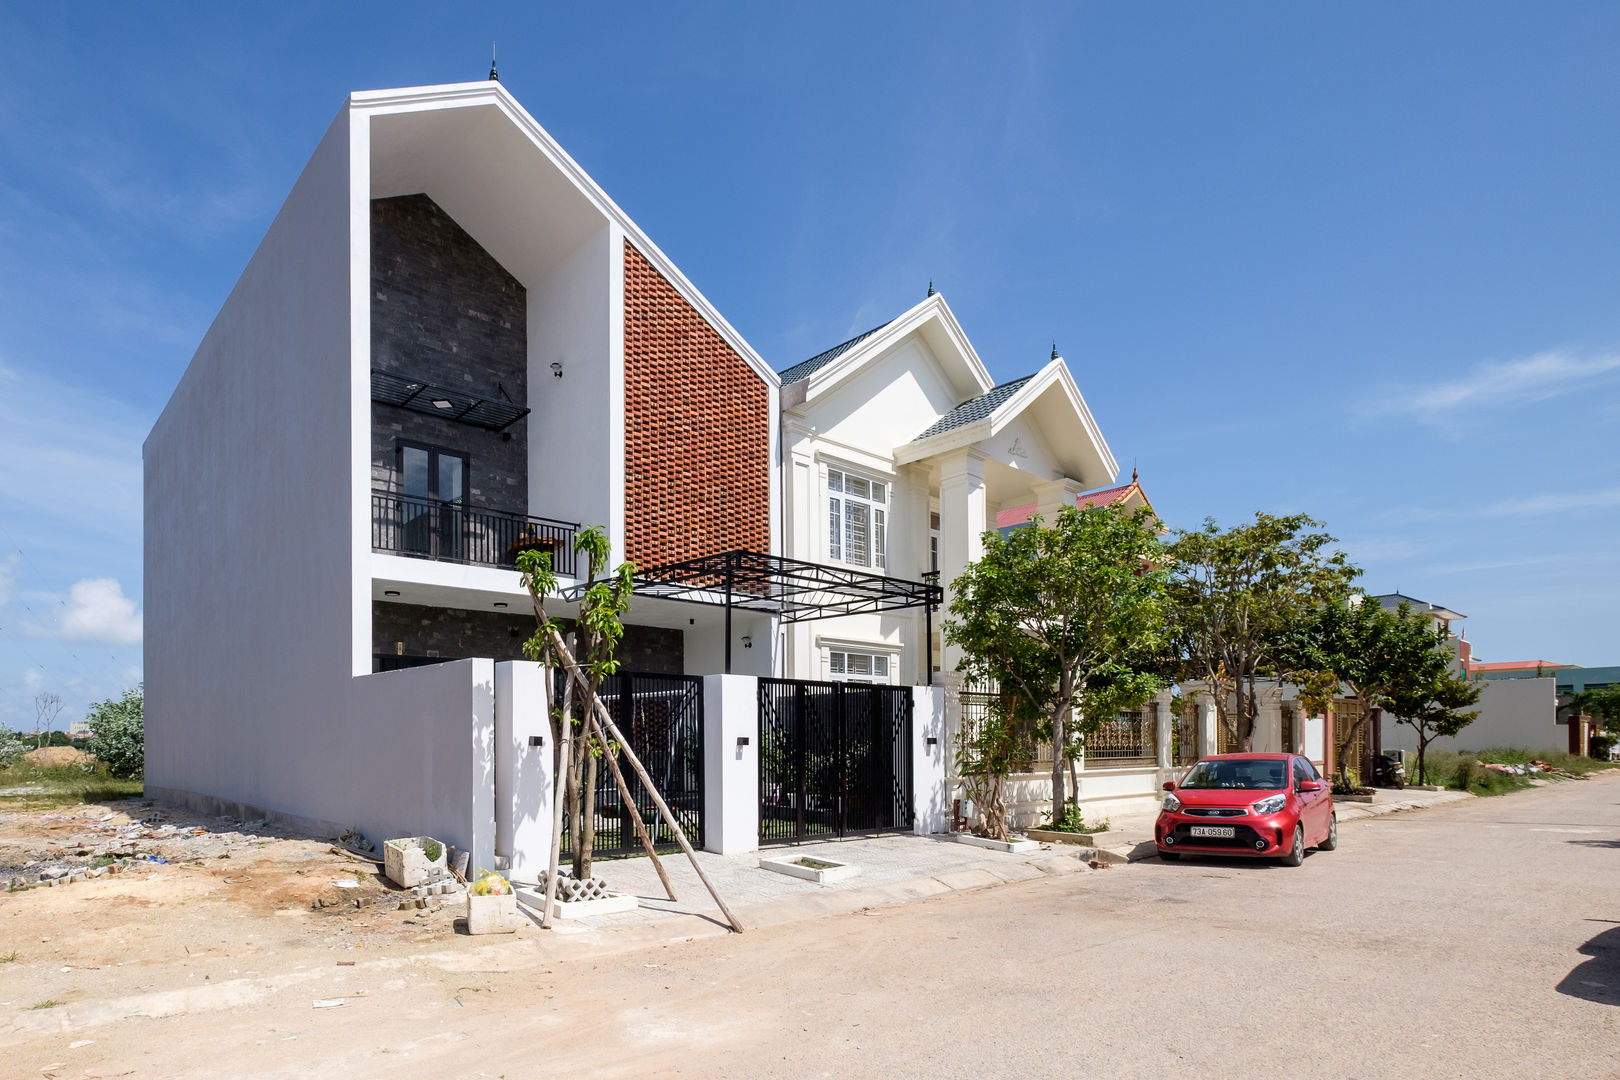 PH - House, Mét Vuông Mét Vuông Detached home